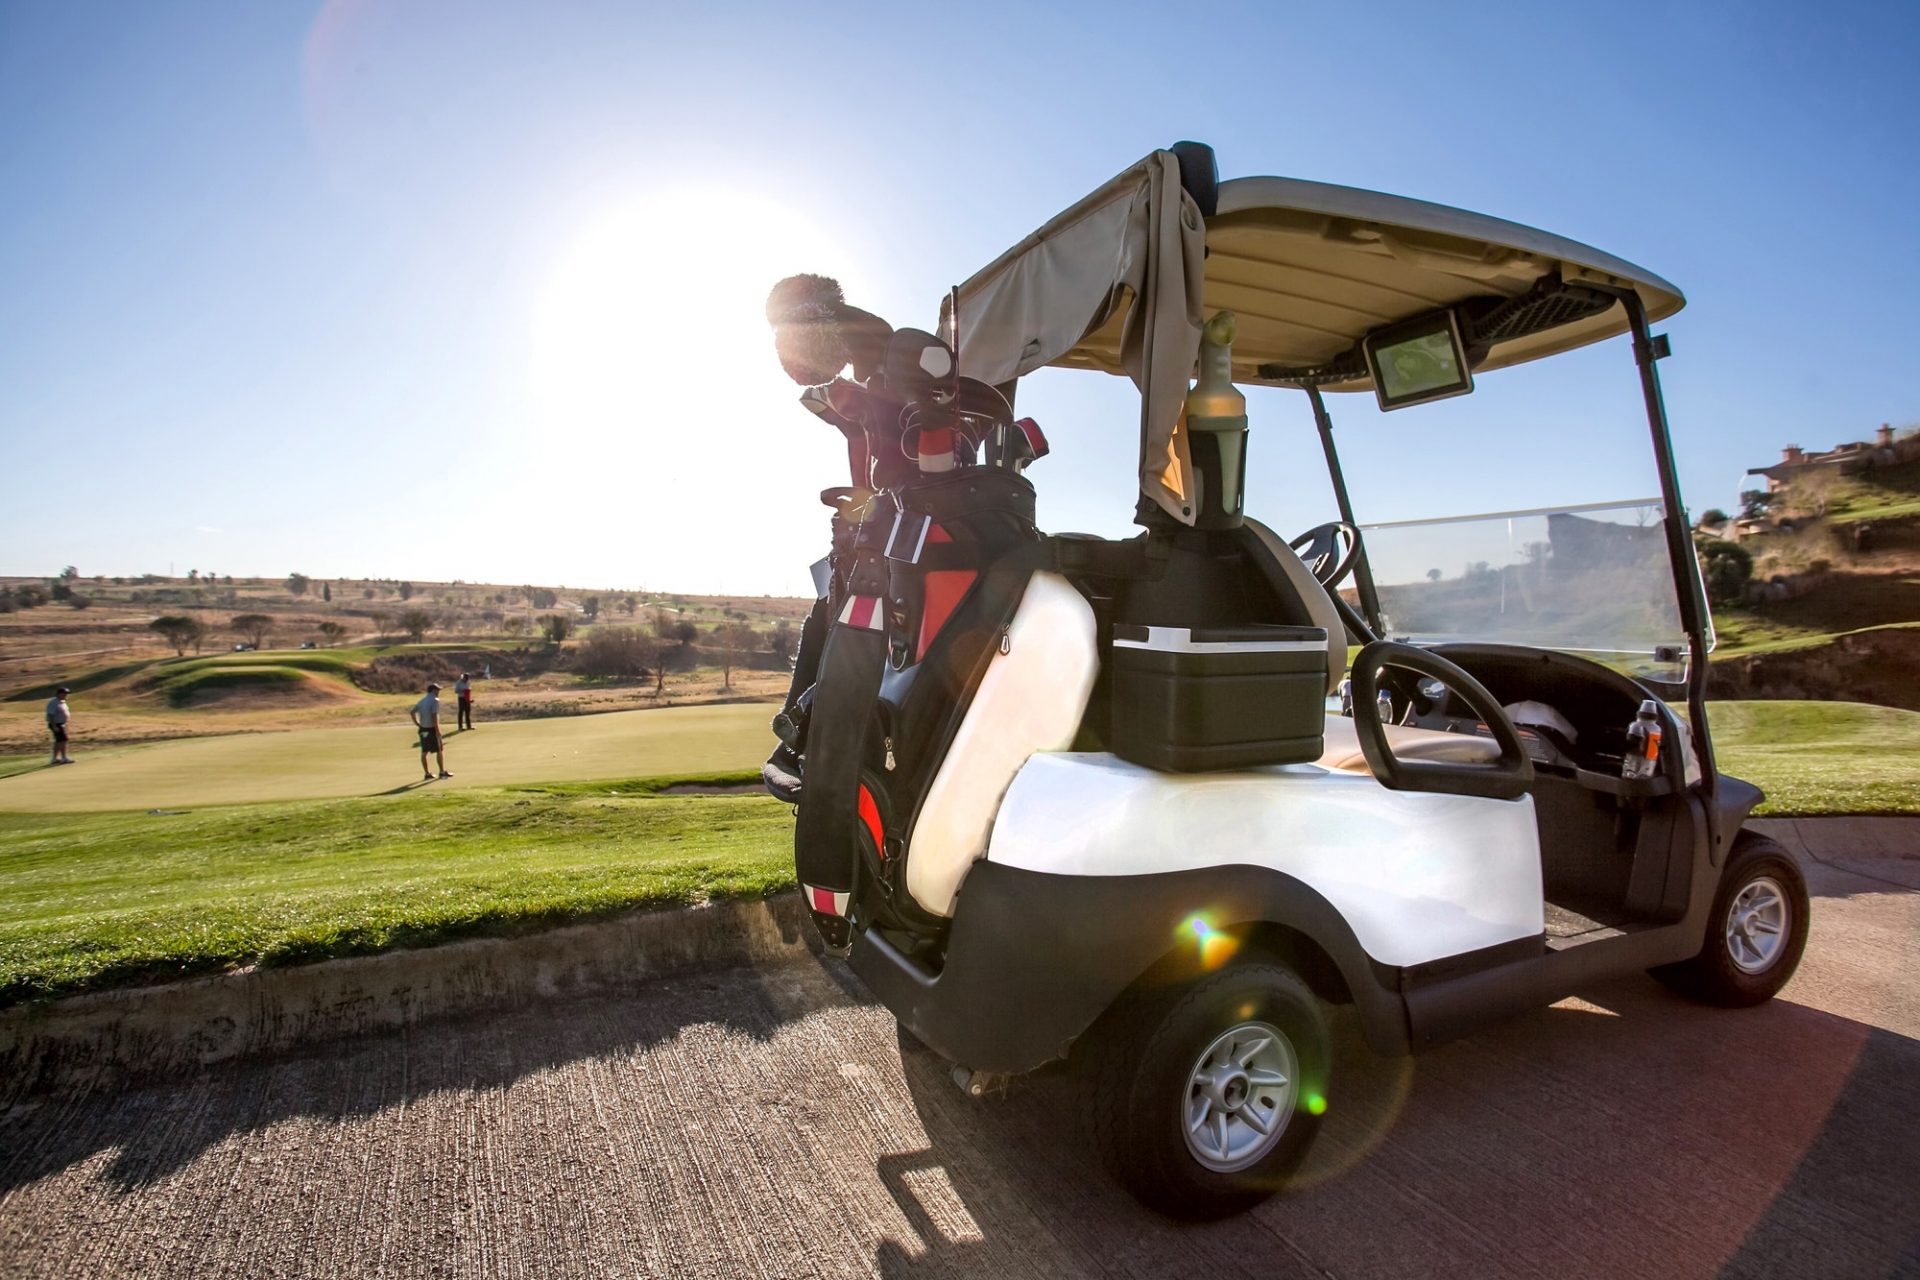 Golf cart on golf course.